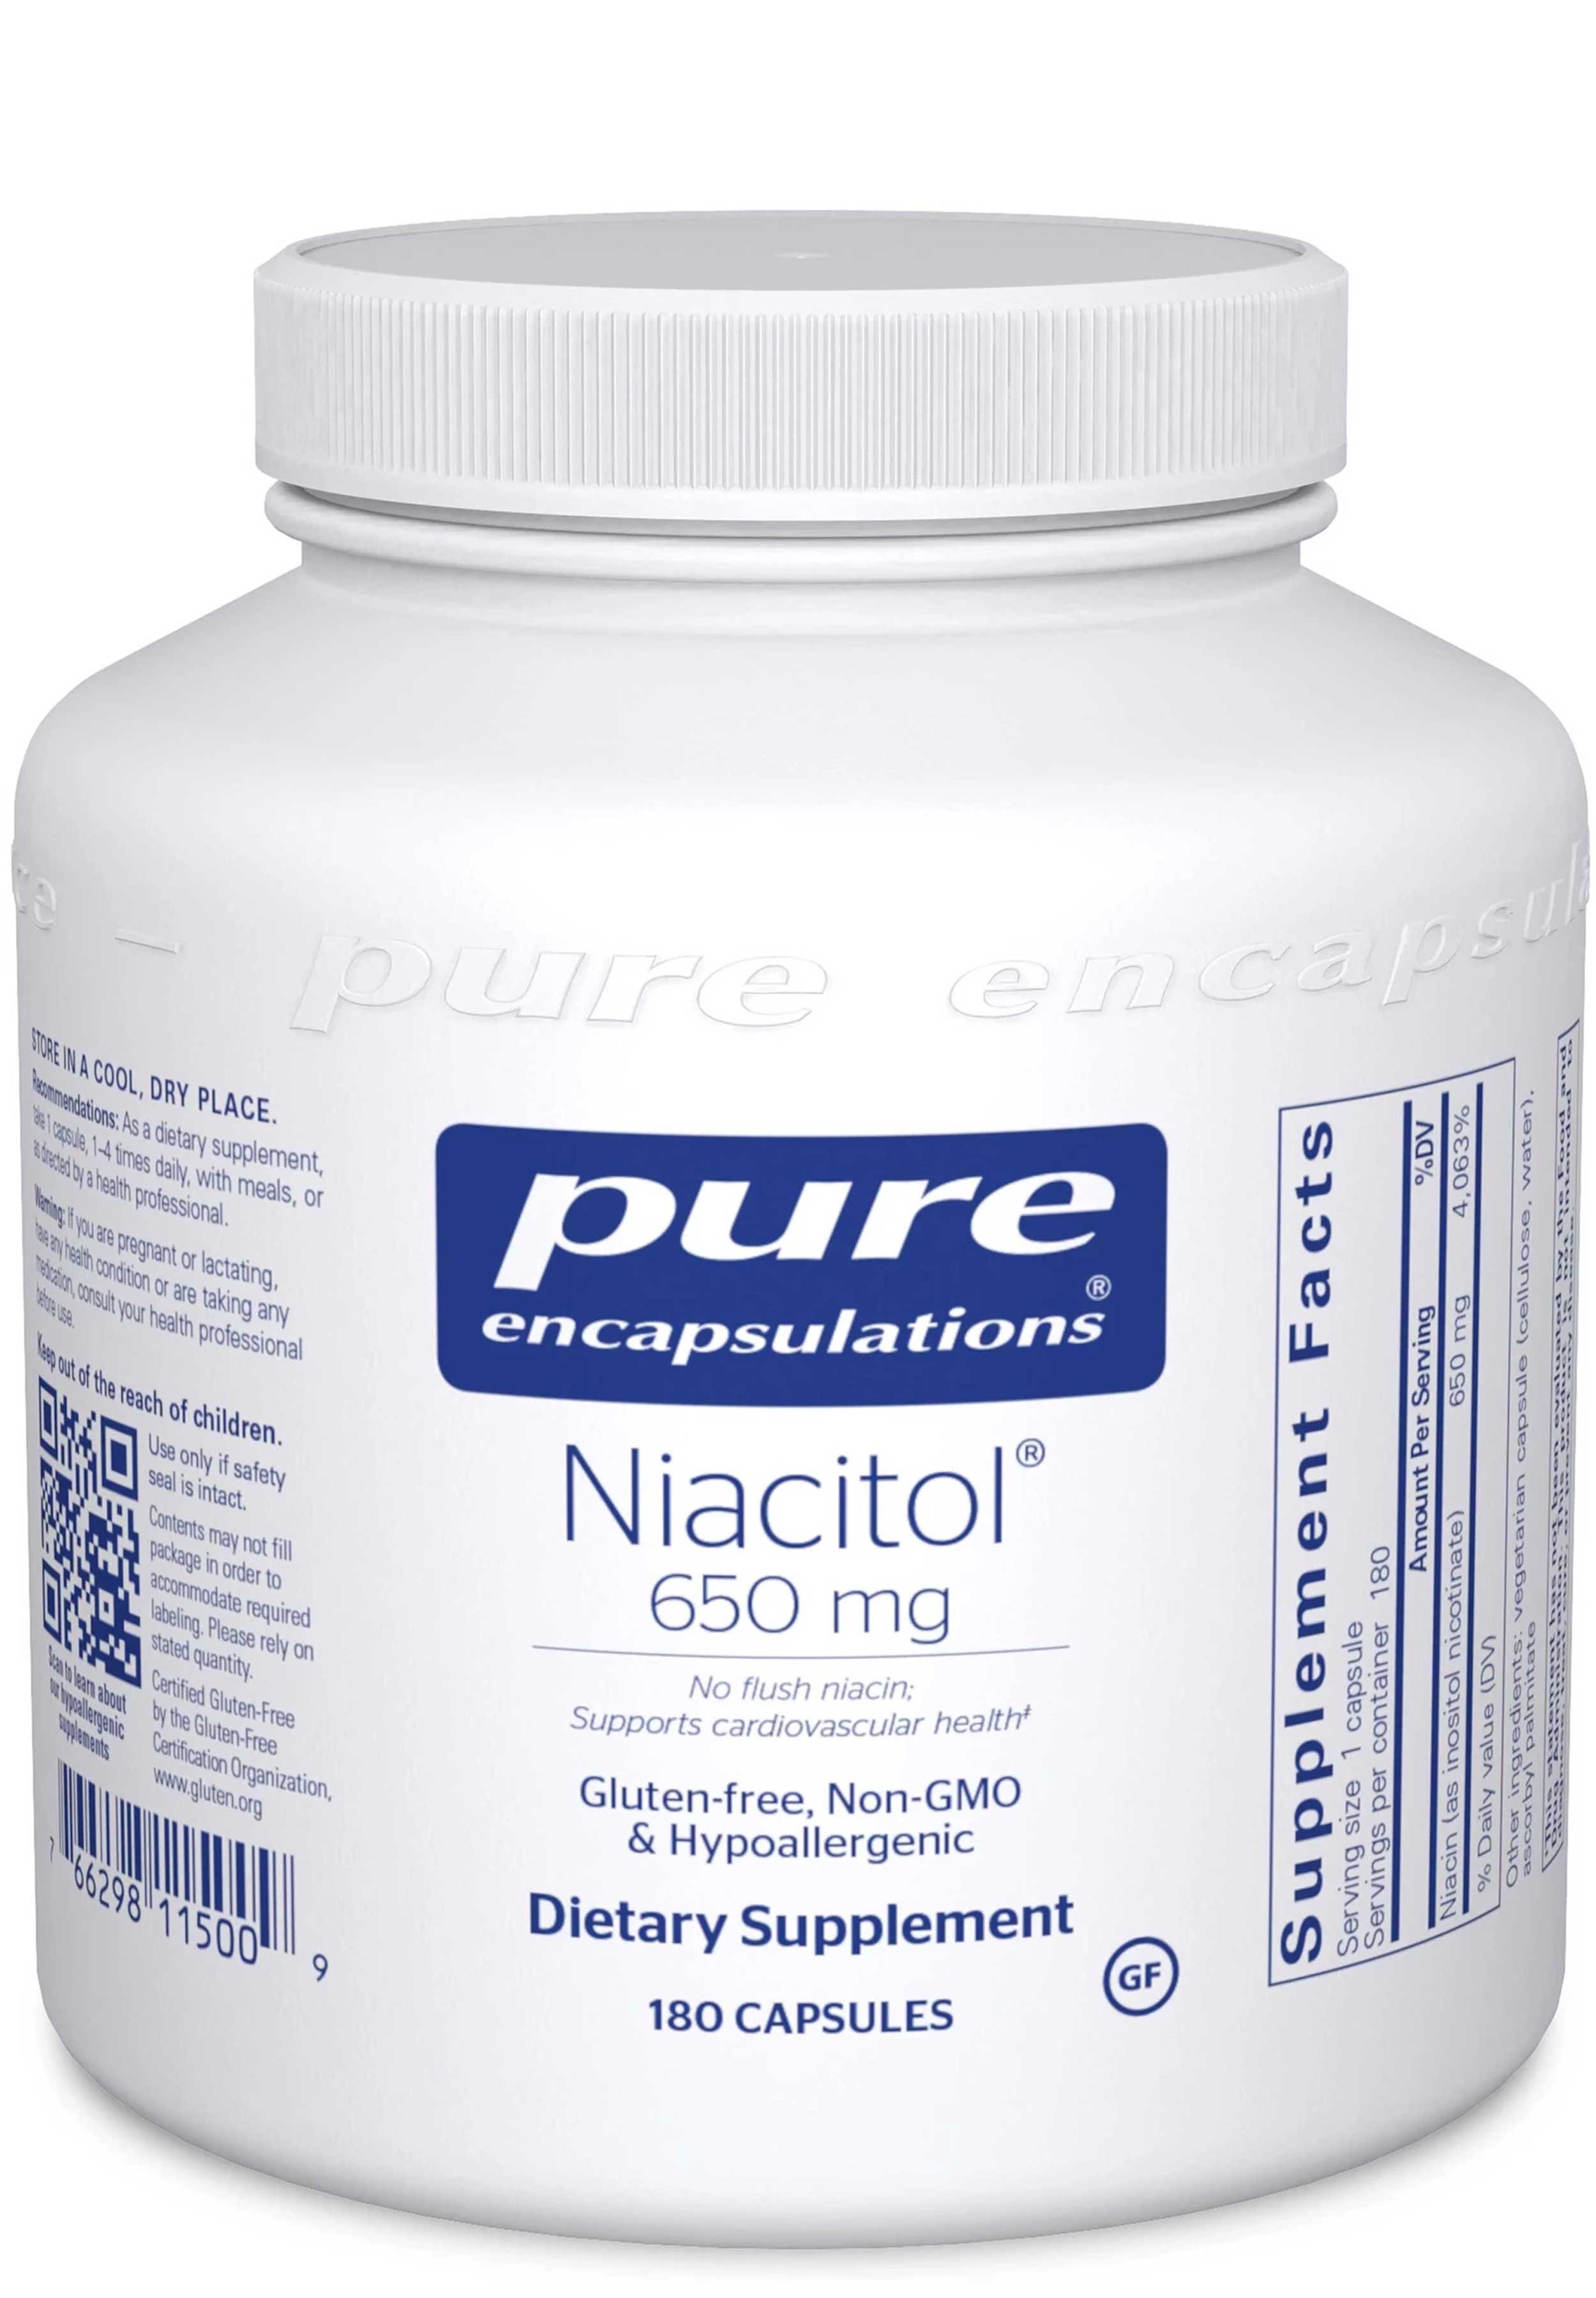 Pure Encapsulations Niacitol 650mg